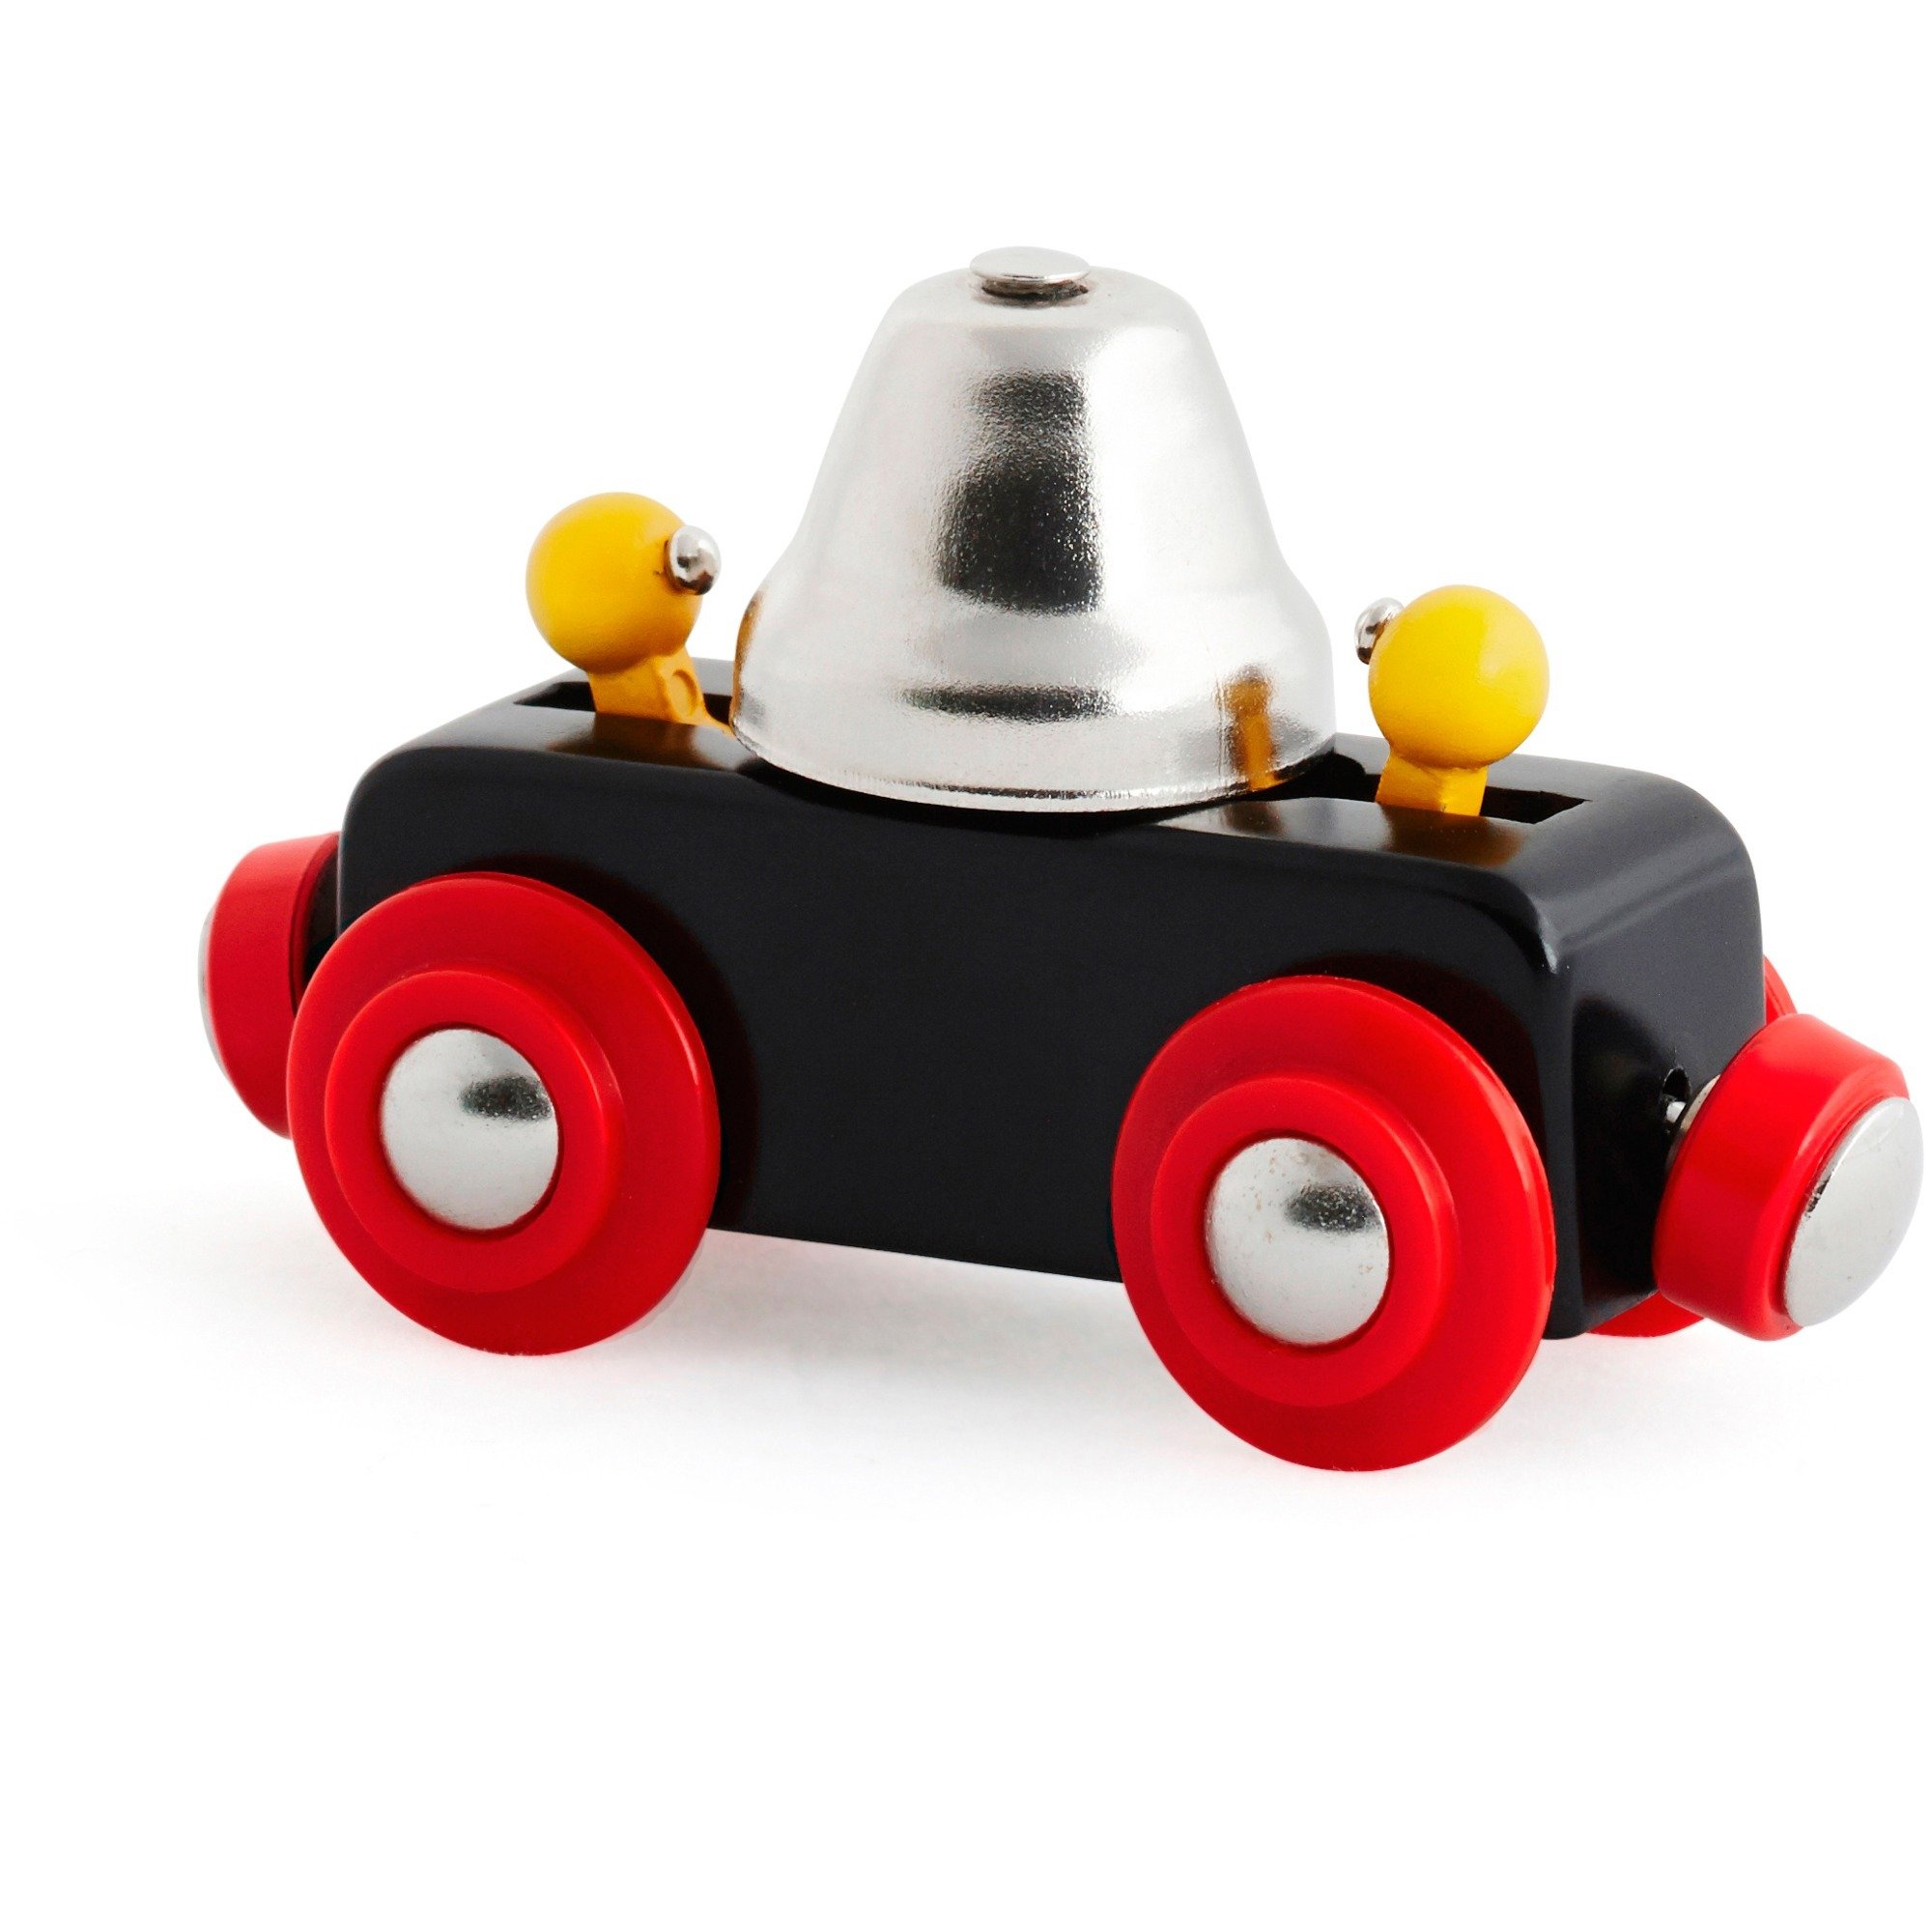 Bell Wagon Akcesoria do modeli kolejek elektrycznych, Toy vehicle